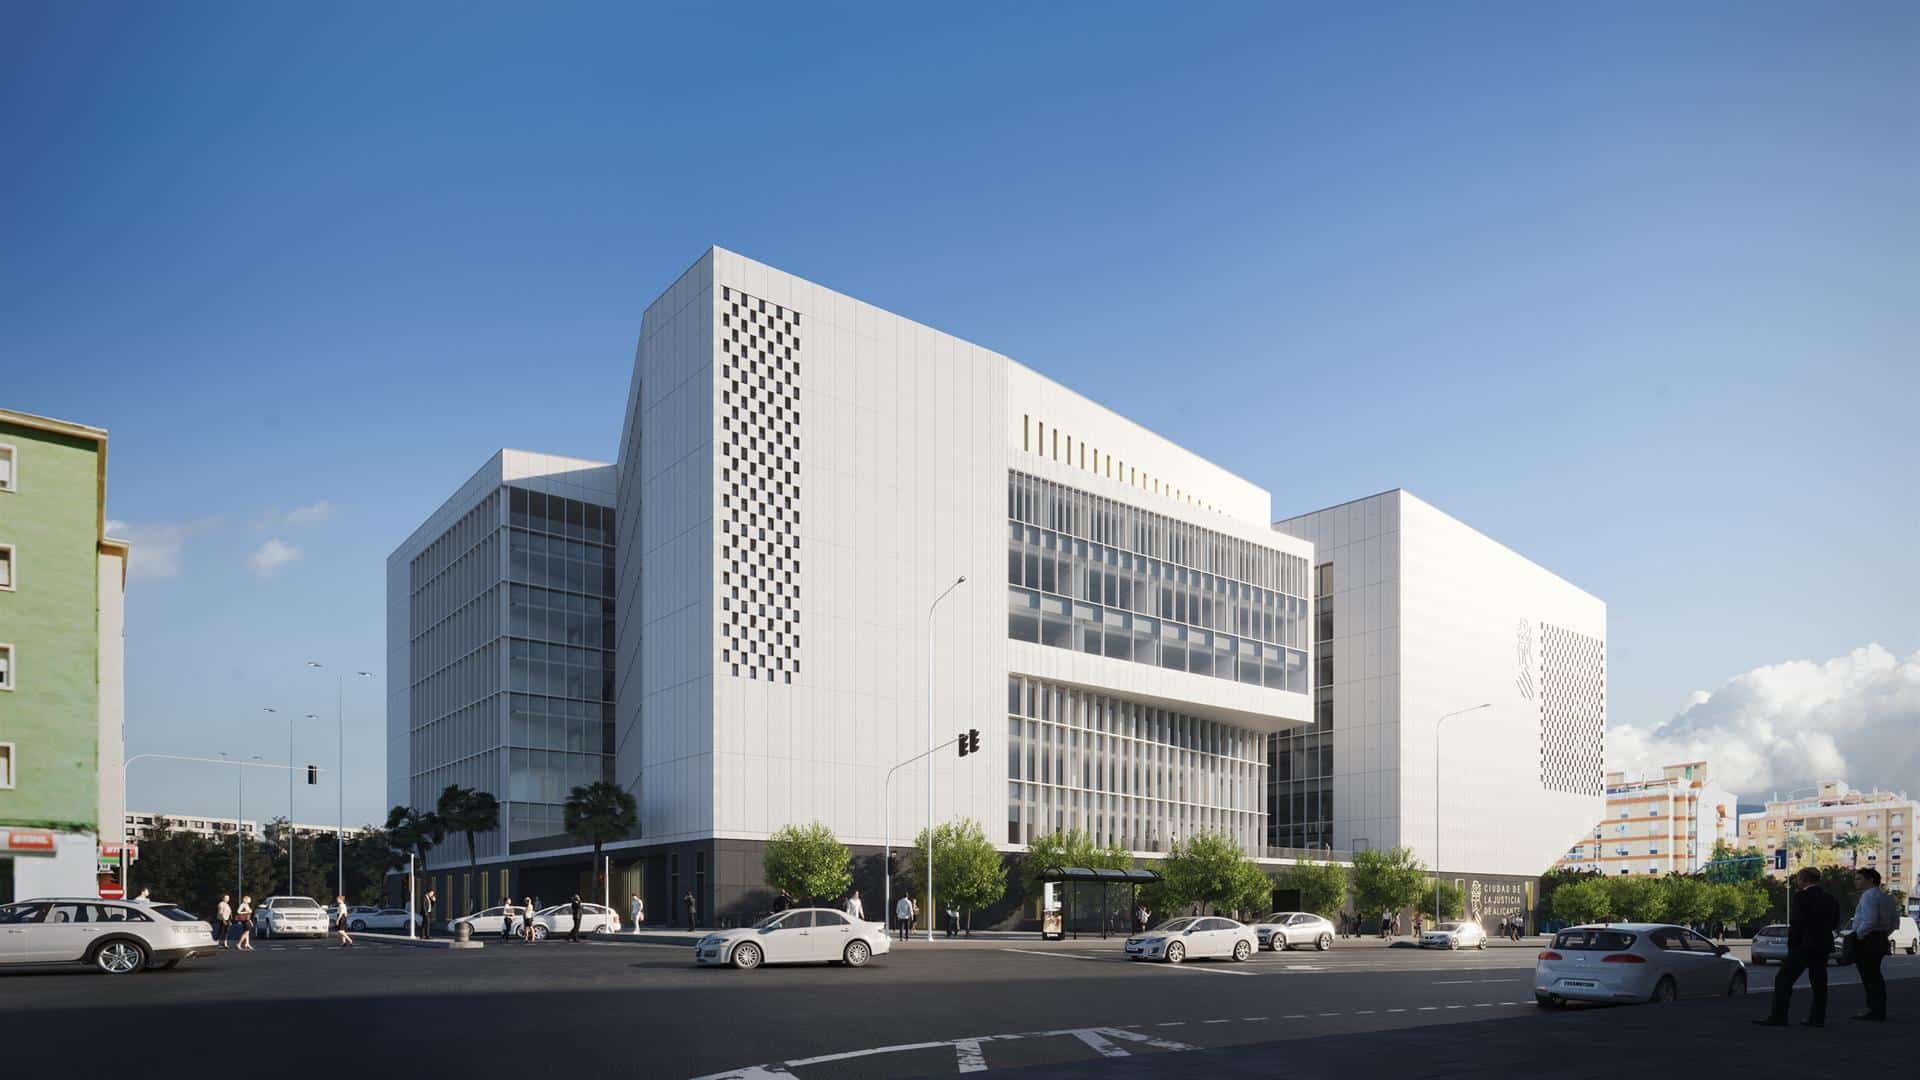 La nueva Ciudad de la Justicia de Alicante estará operativa en 2025 tras una inversión de 86 millones